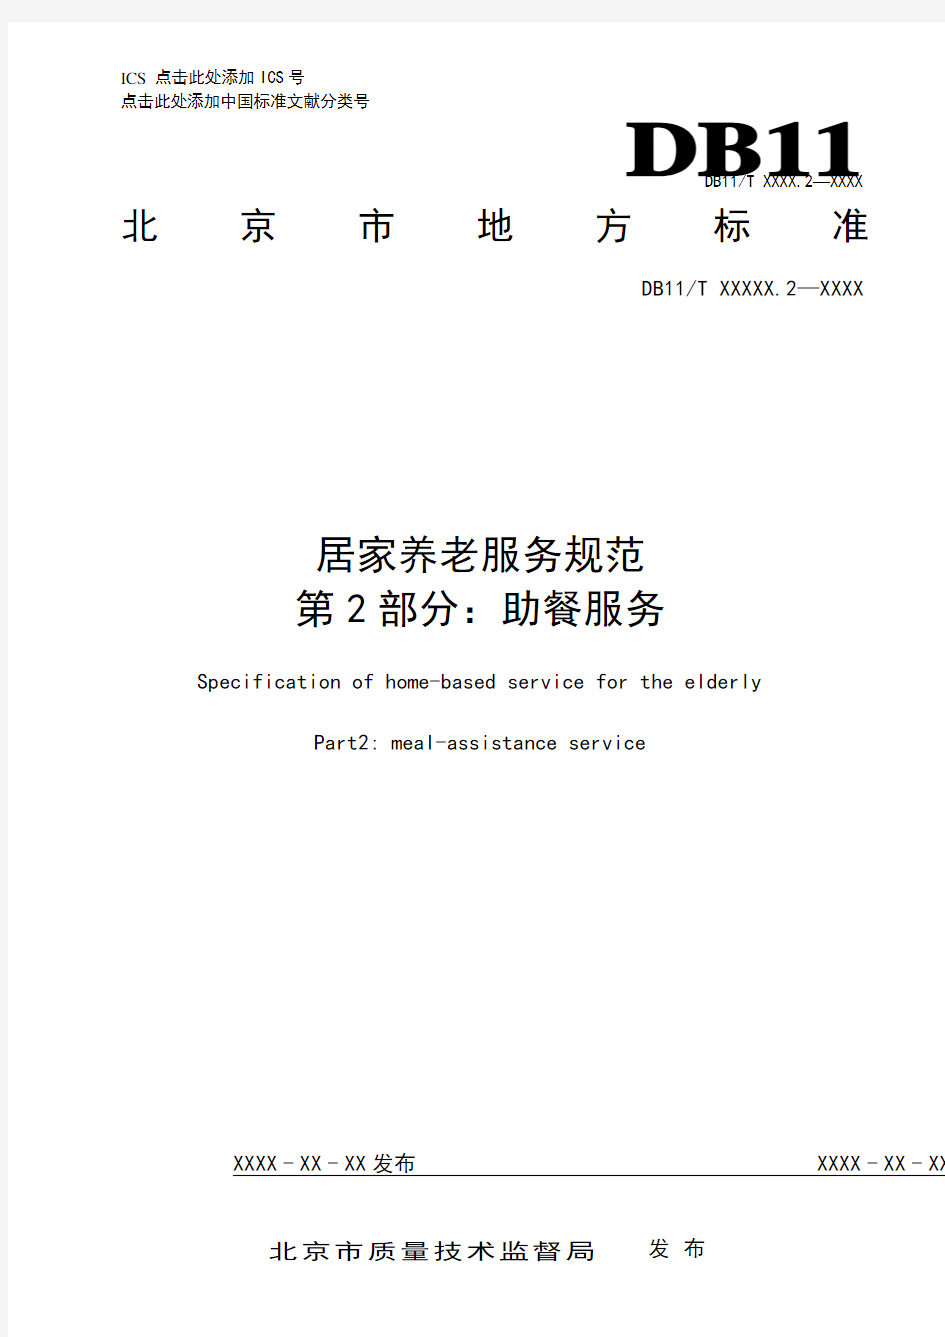 居家养老服务规范第2部分助餐服务-北京质量技术监督局